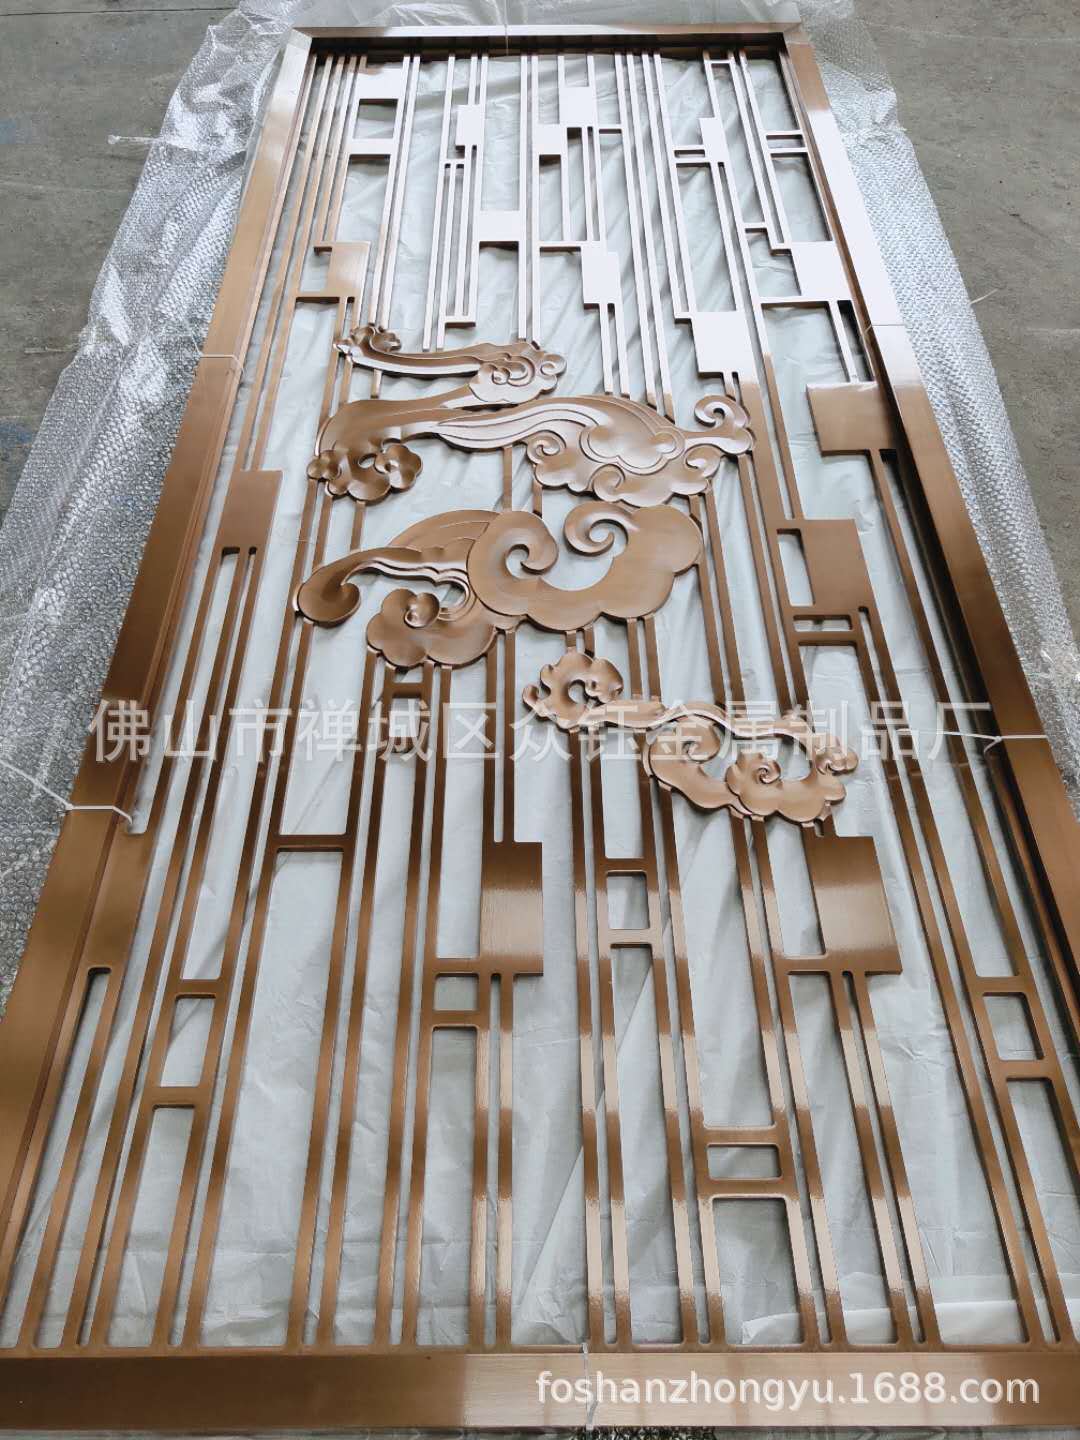 厂家直销 铝板镂空雕刻祥云屏风表面红古铜大气古典示例图1